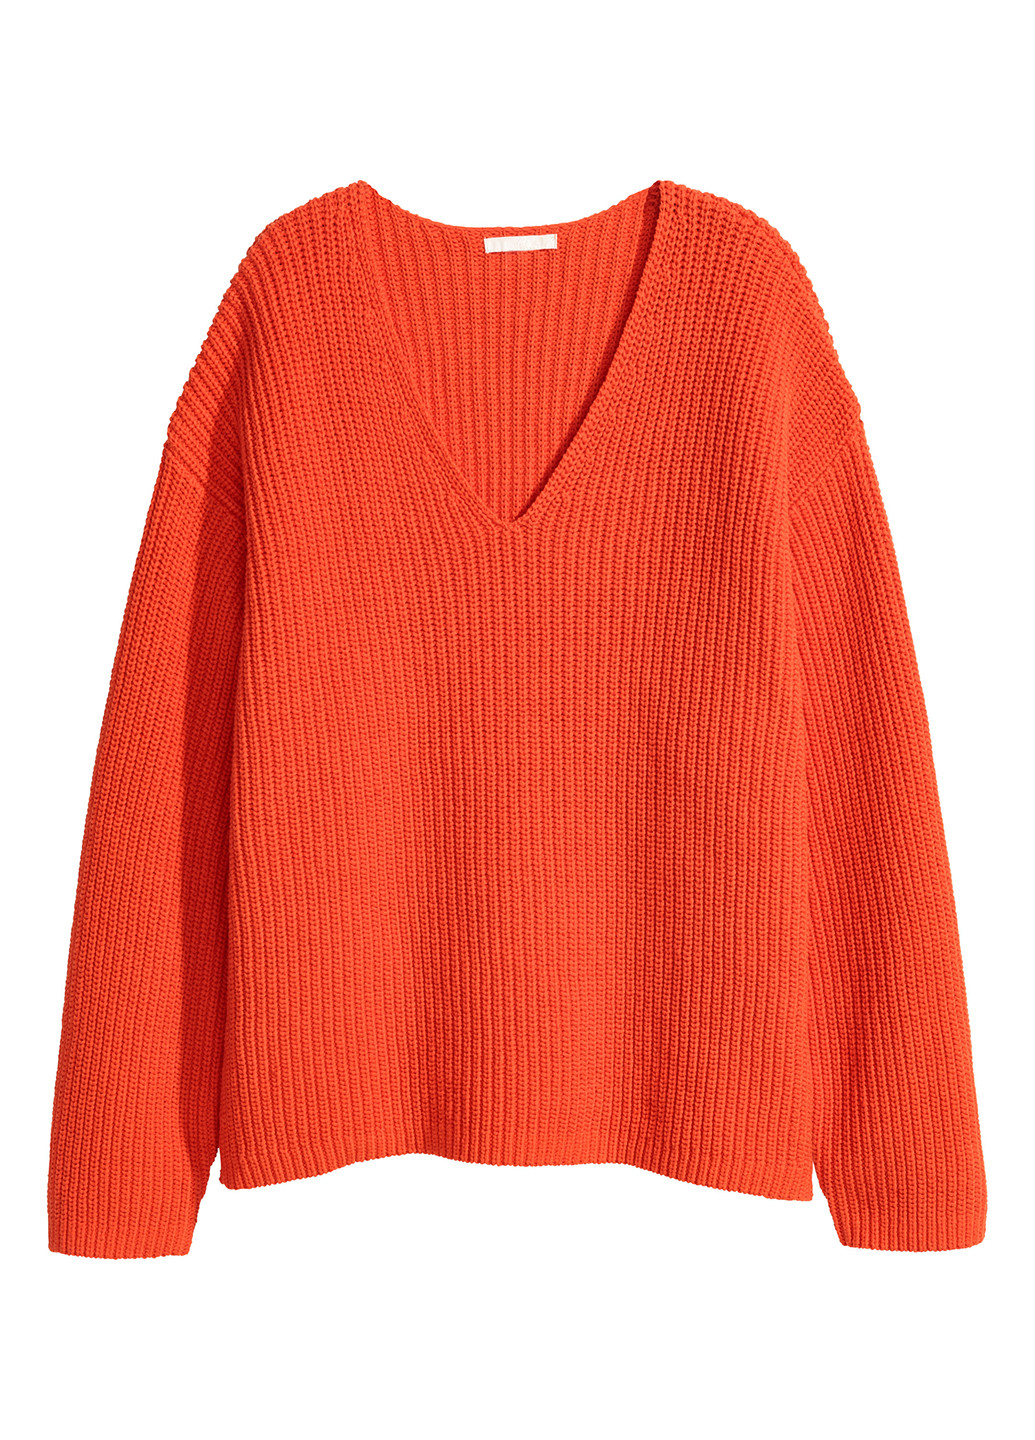 Оранжевый демисезонный пуловер пуловер H&M